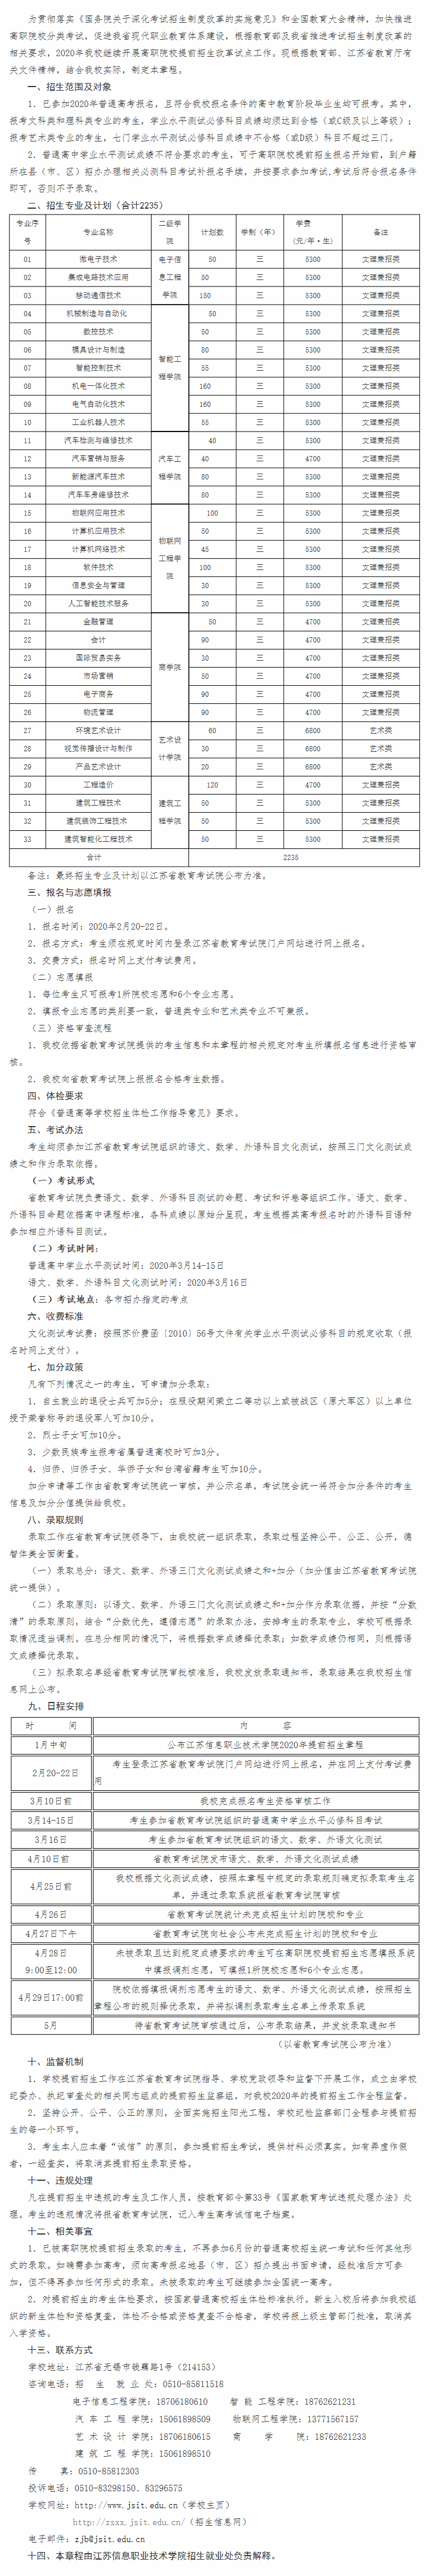 江苏信息职业技术学院2020年提前招生章程